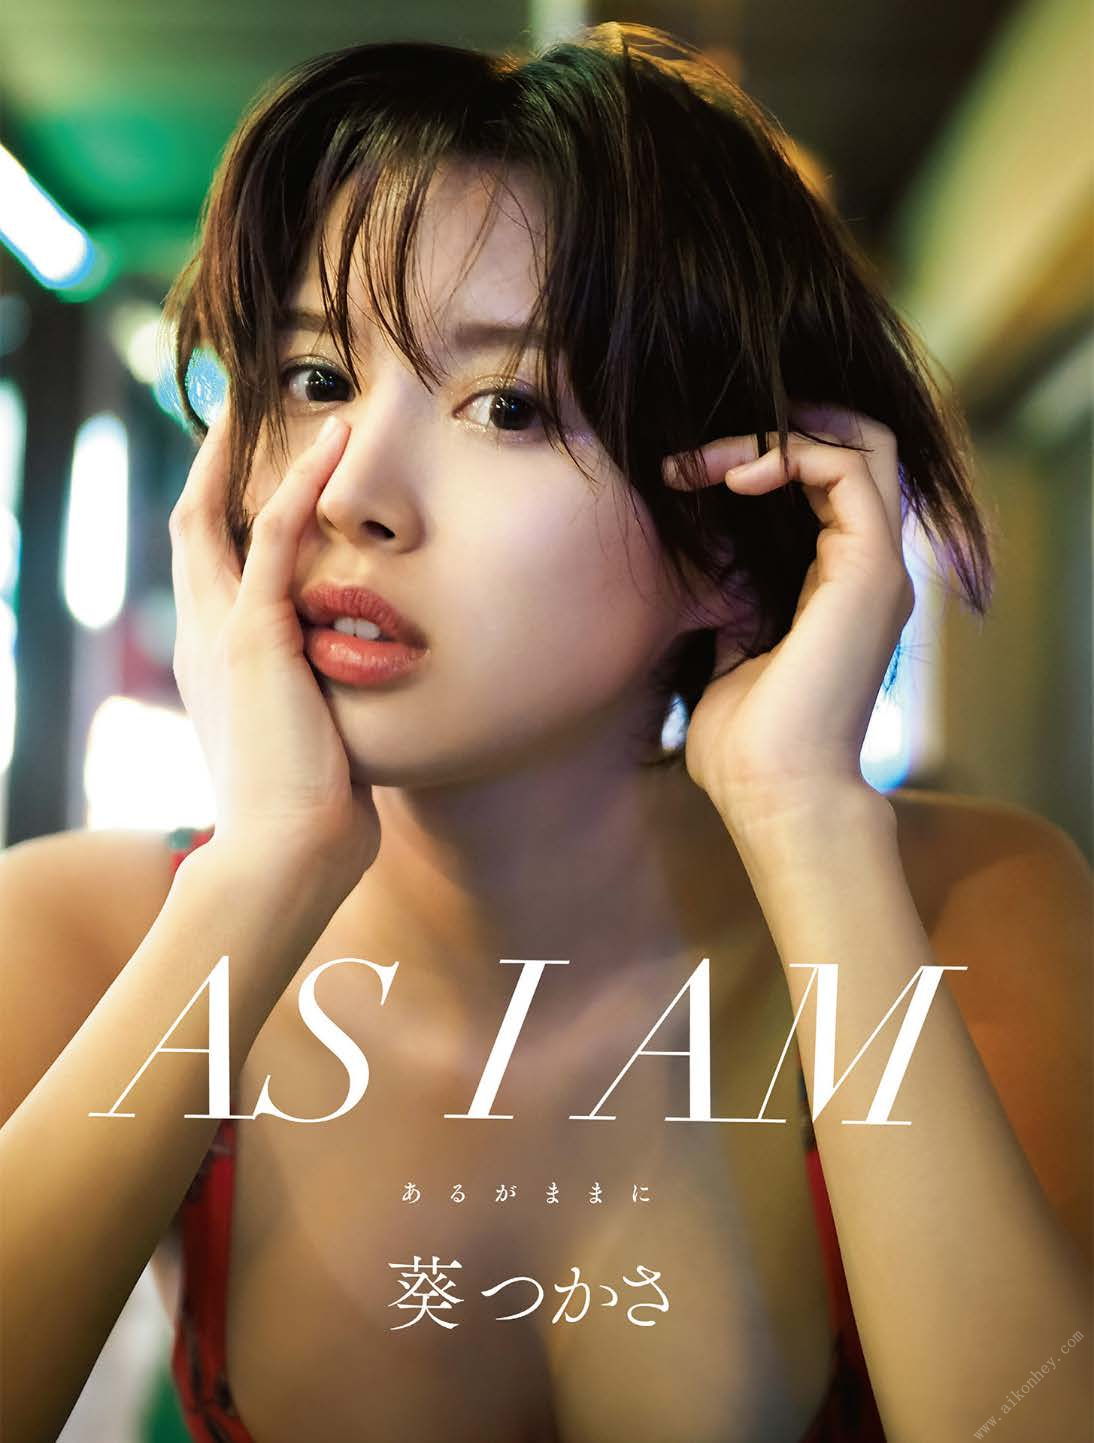 葵つかさ- アサ芸SEXY女優寫真集 「AS I AM -あるがままに」 Set-01 - 貼圖 - 清涼寫真 -